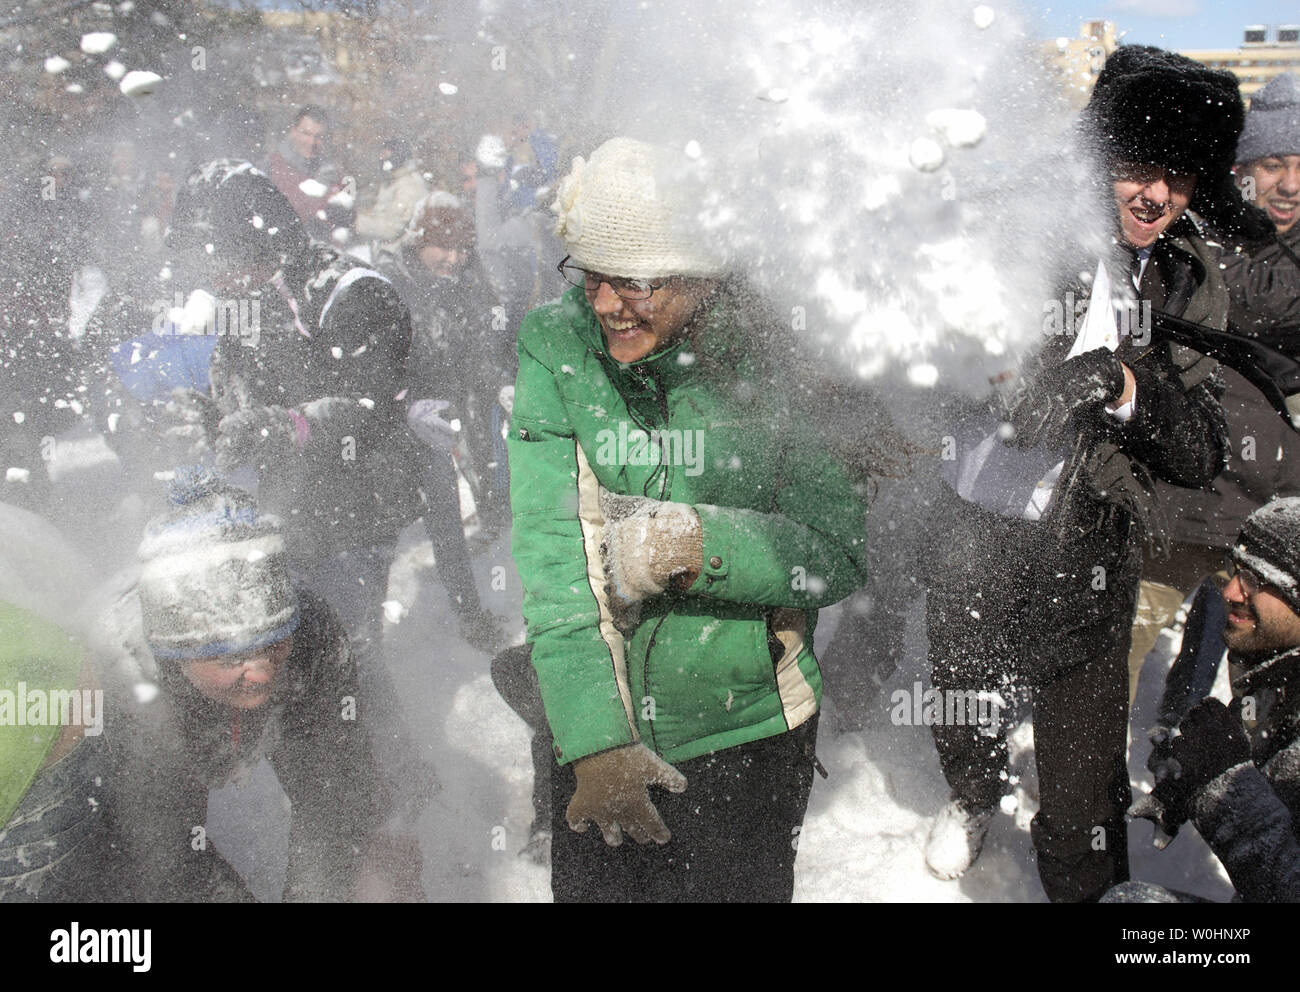 Die Menschen nehmen Teil in einem großen Schneeball Schneeballschlacht auf Social Media organisiert, in Meridan Hill Park in Washington, D.C., 17. Februar 2015. Der Präsident Tag Schnee Sturm gesunken 3-6 Zoll Schnee auf der D.C. Region. Foto von Kevin Dietsch/UPI Stockfoto